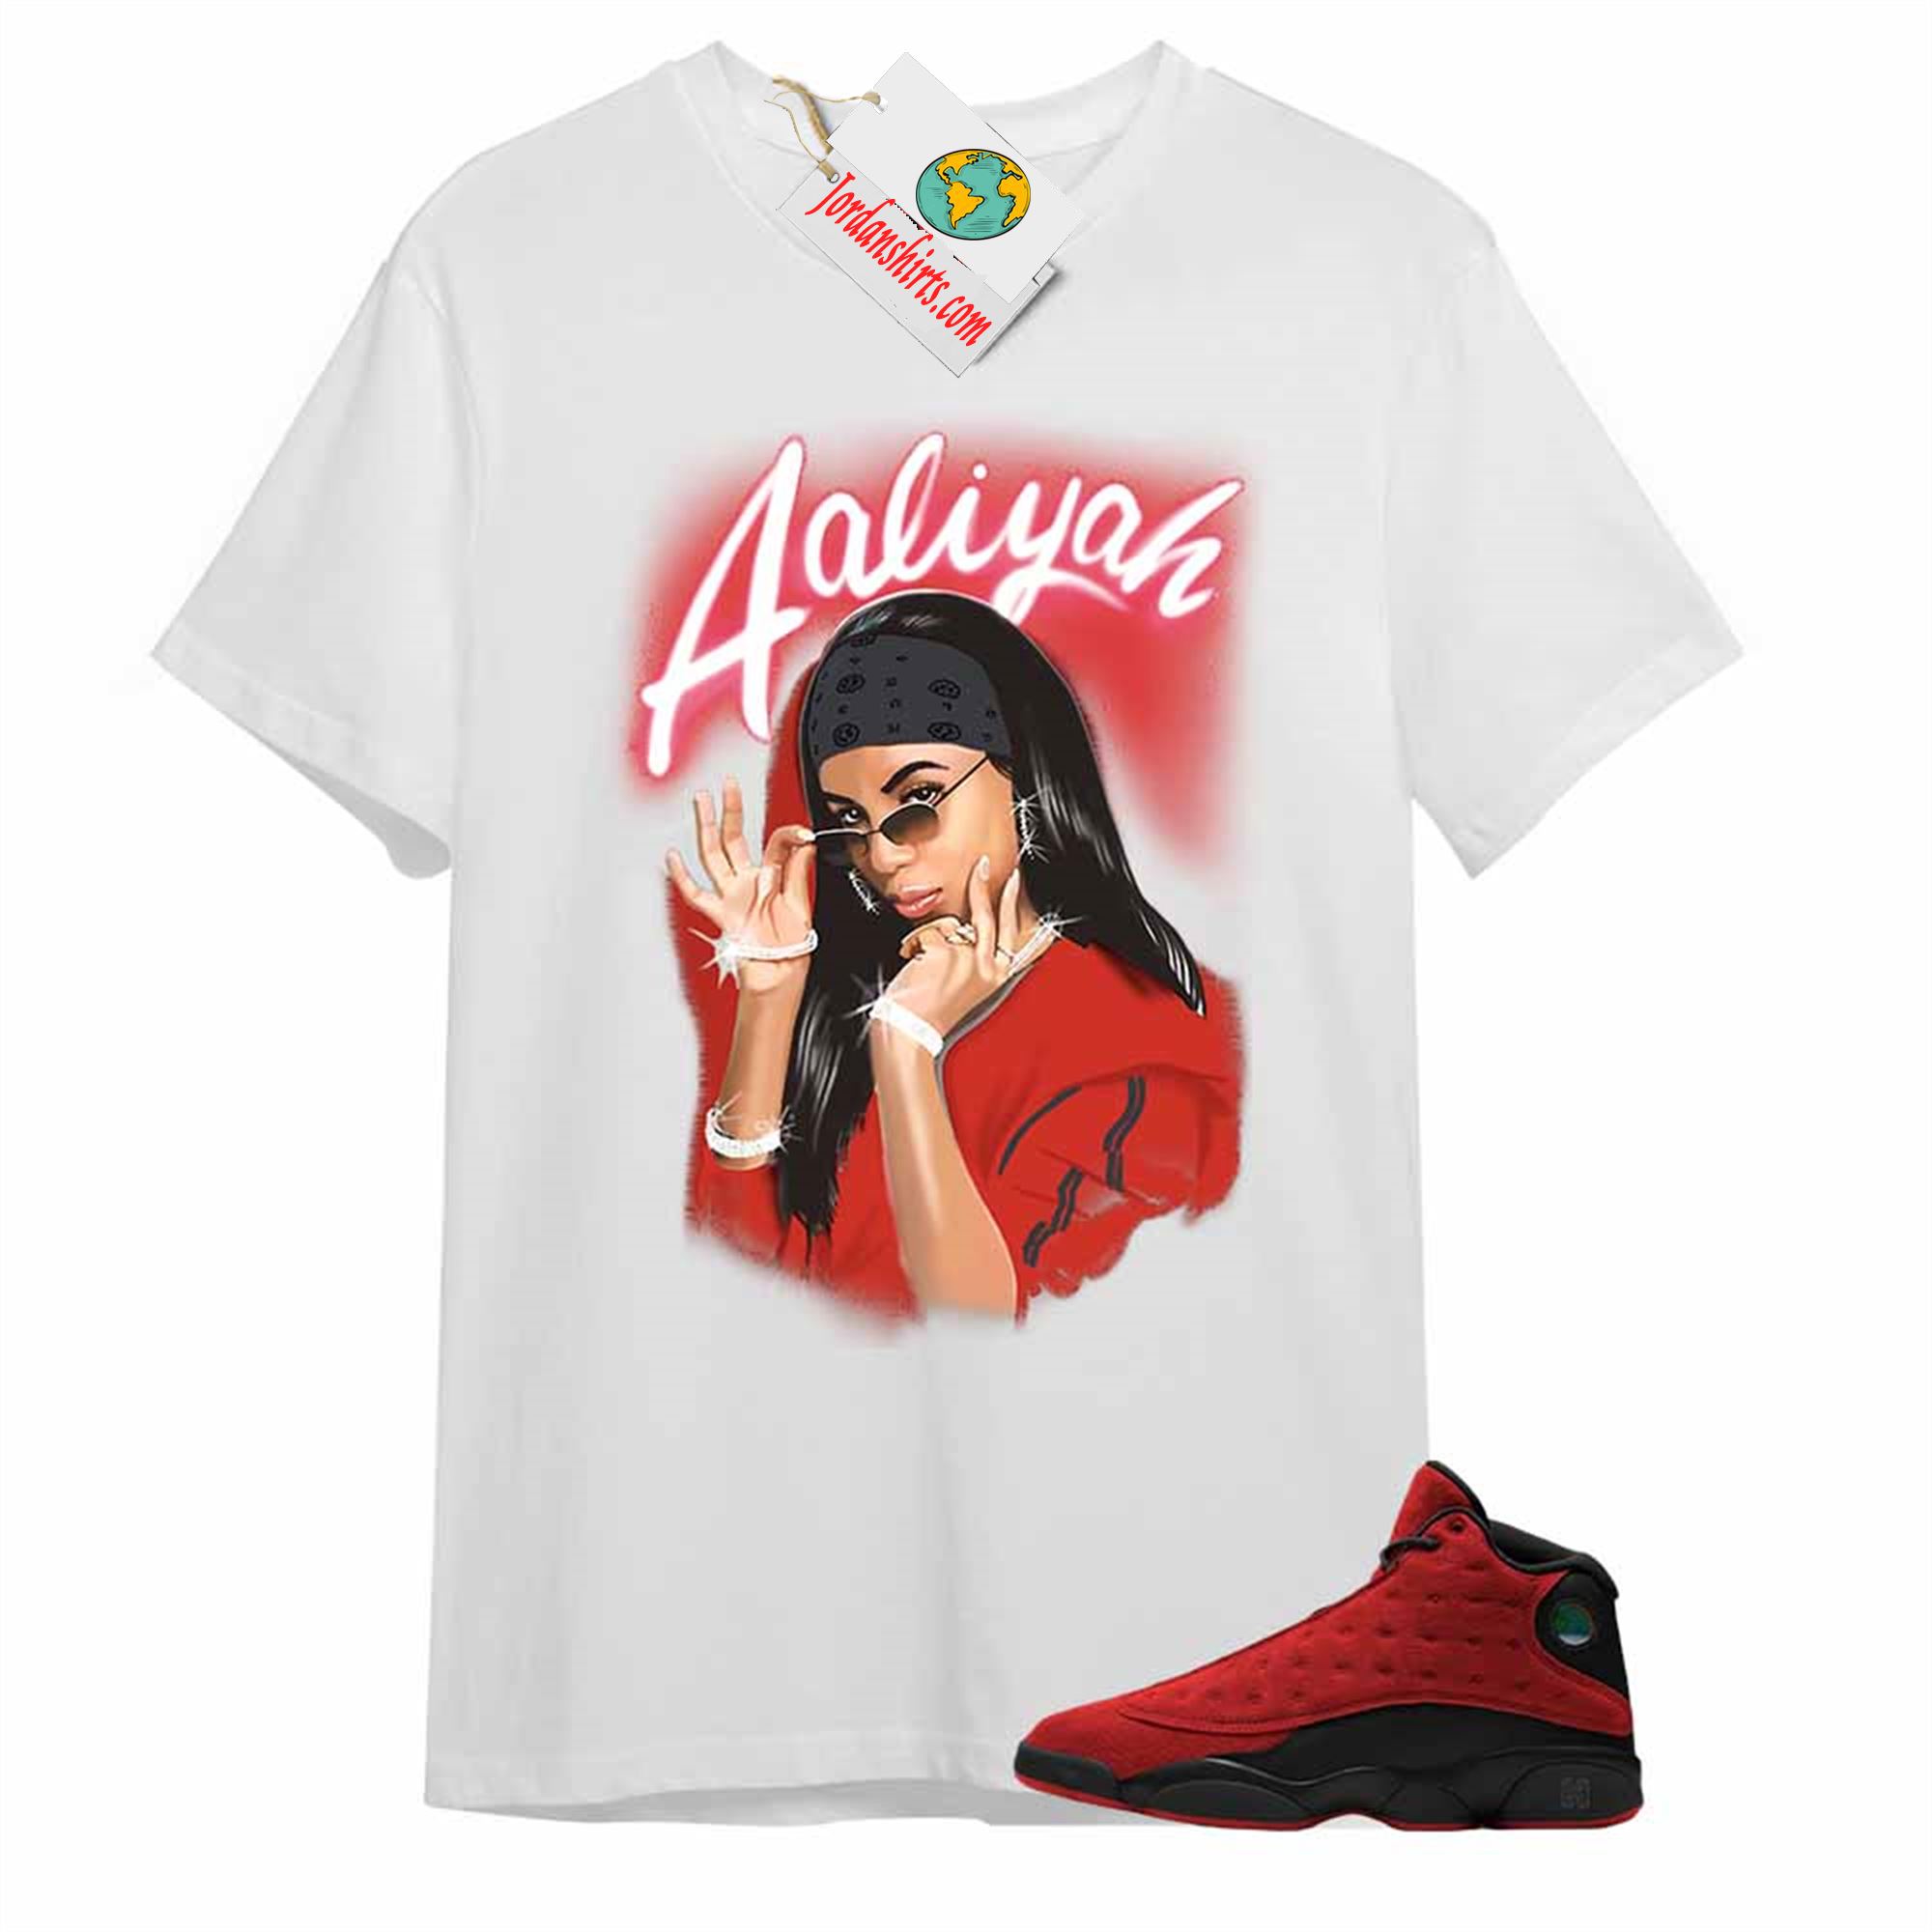 Jordan 13 Shirt, Aaliyah Airbrush White T-shirt Air Jordan 13 Reverse Bred 13s Full Size Up To 5xl